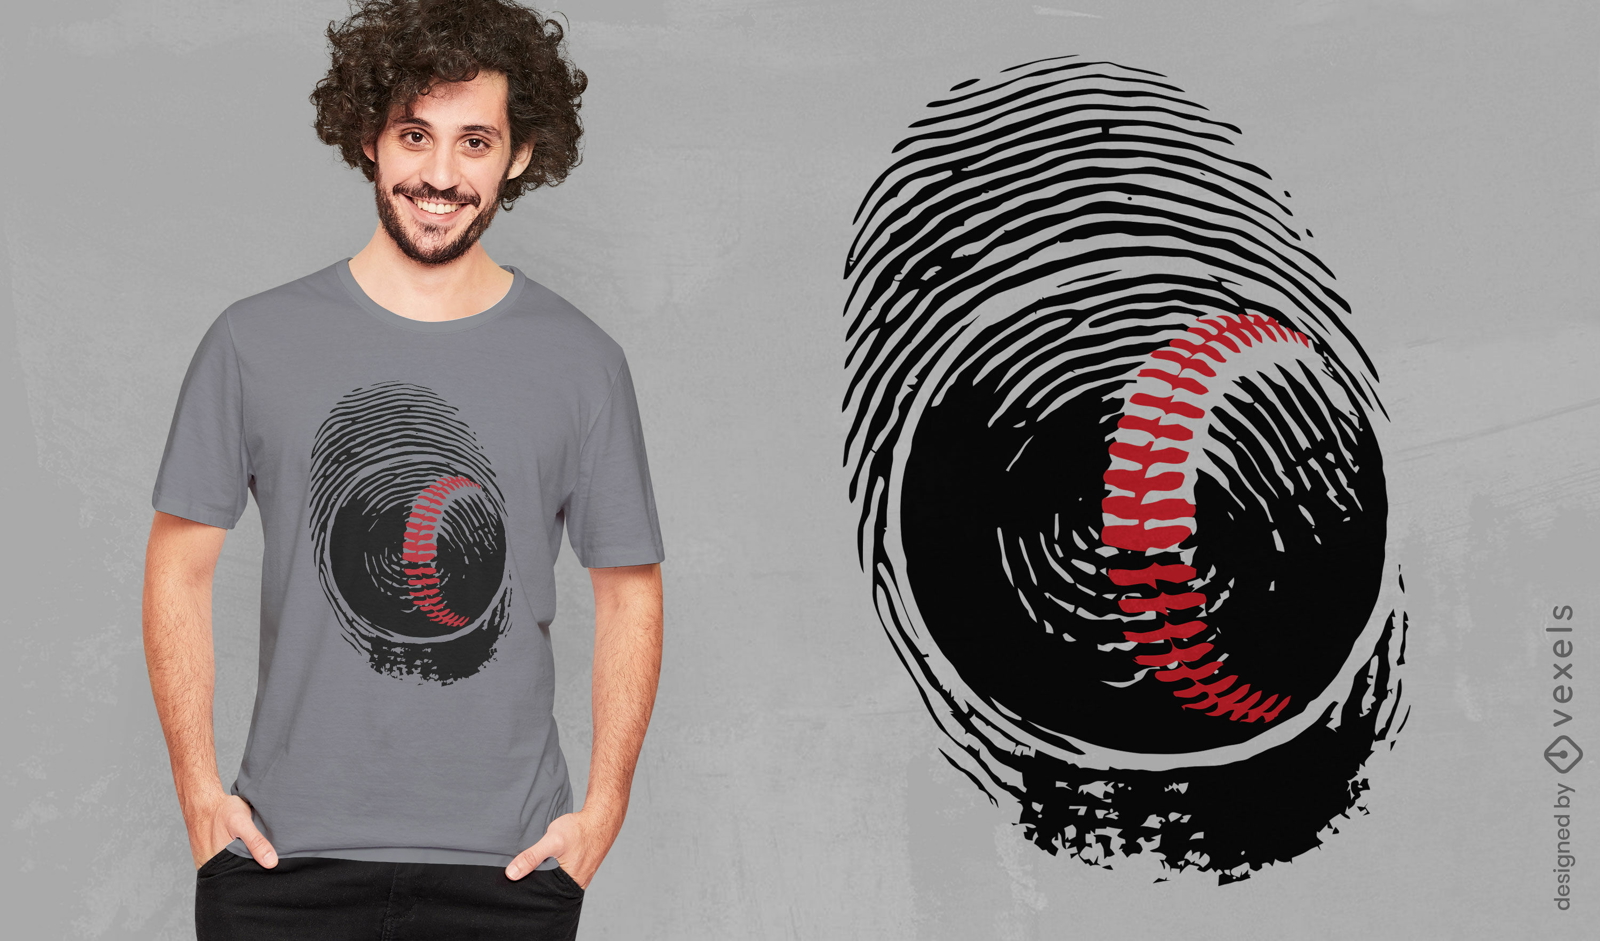 Baseball fingerprint t-shirt design